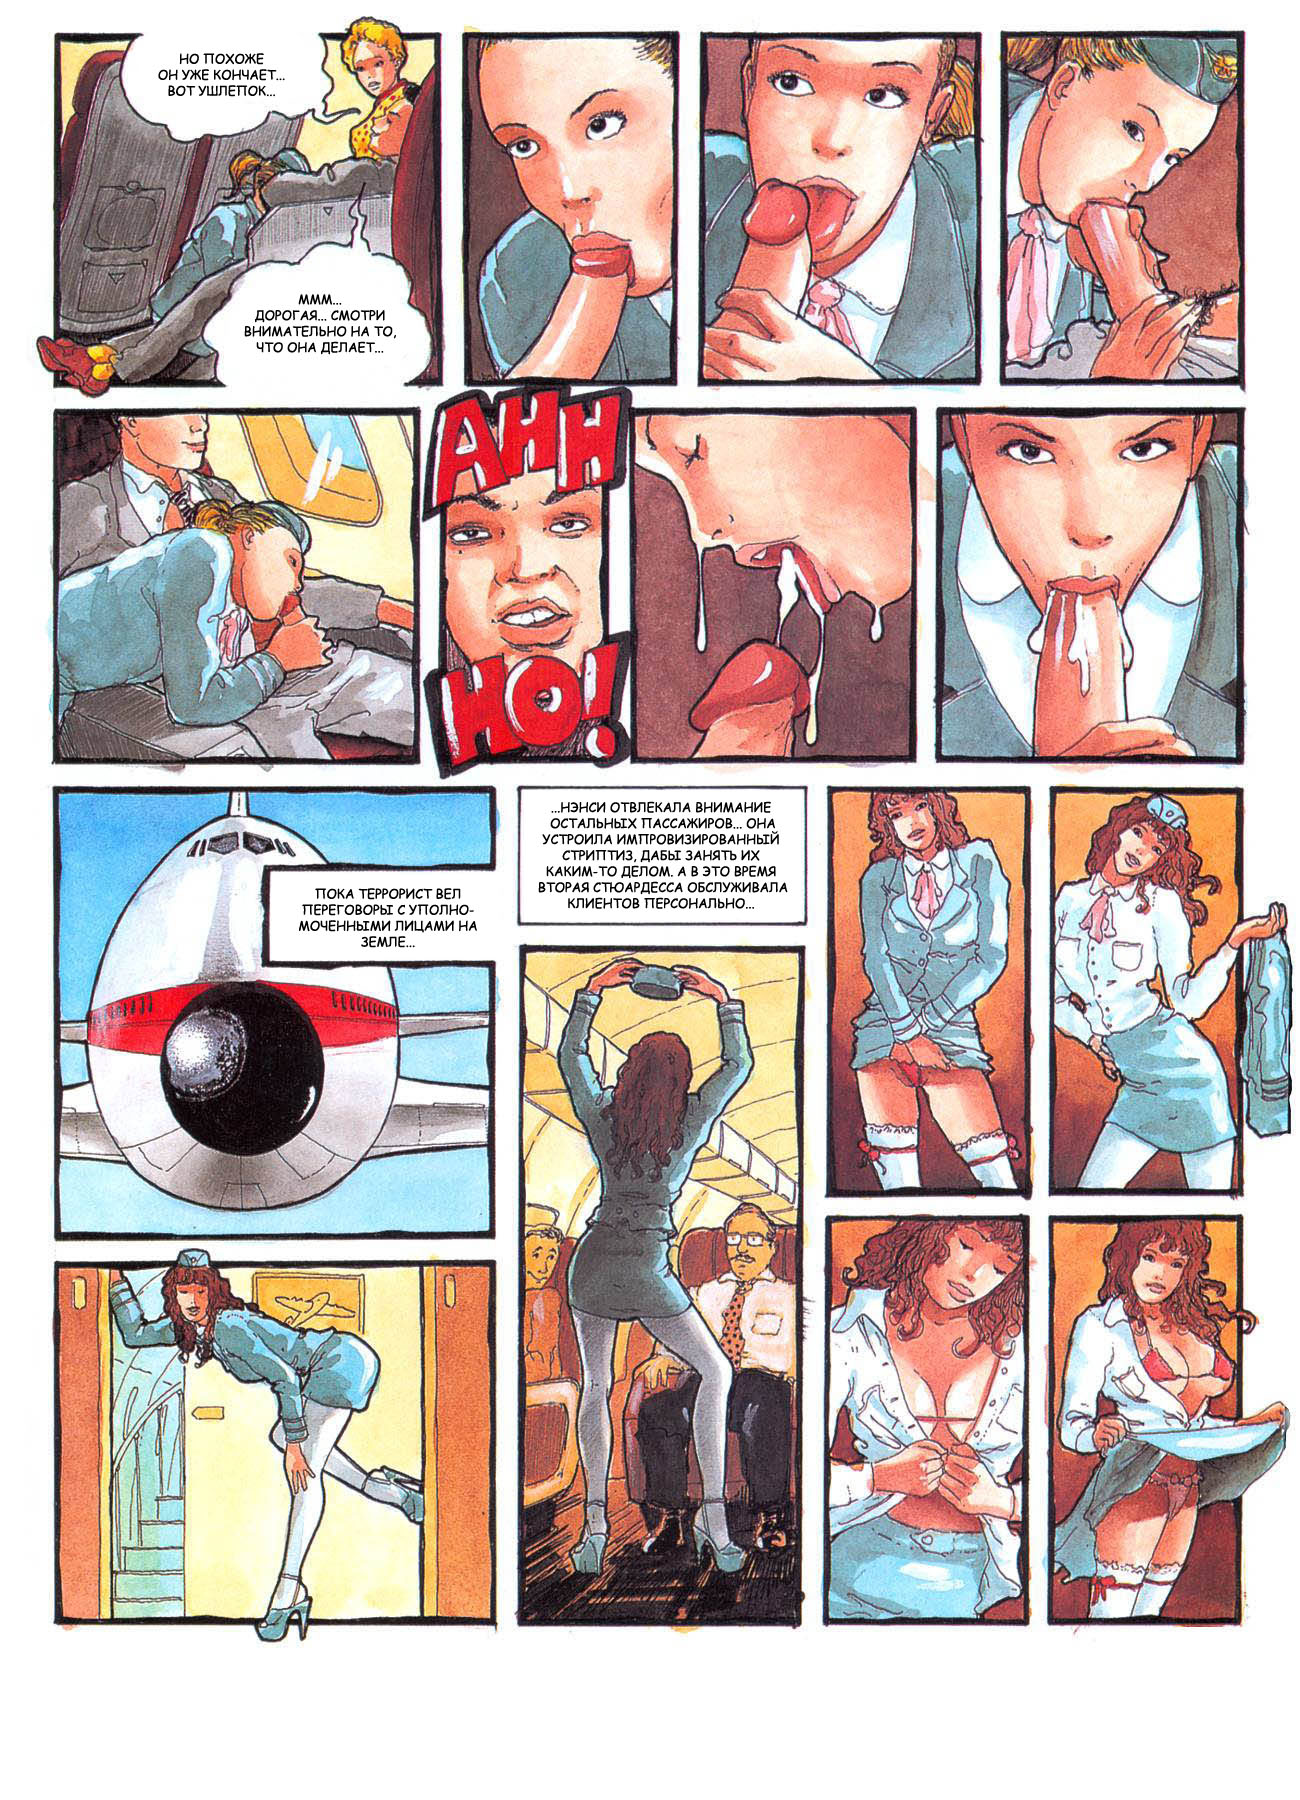 Порно комиксы стюардесса (120) фото